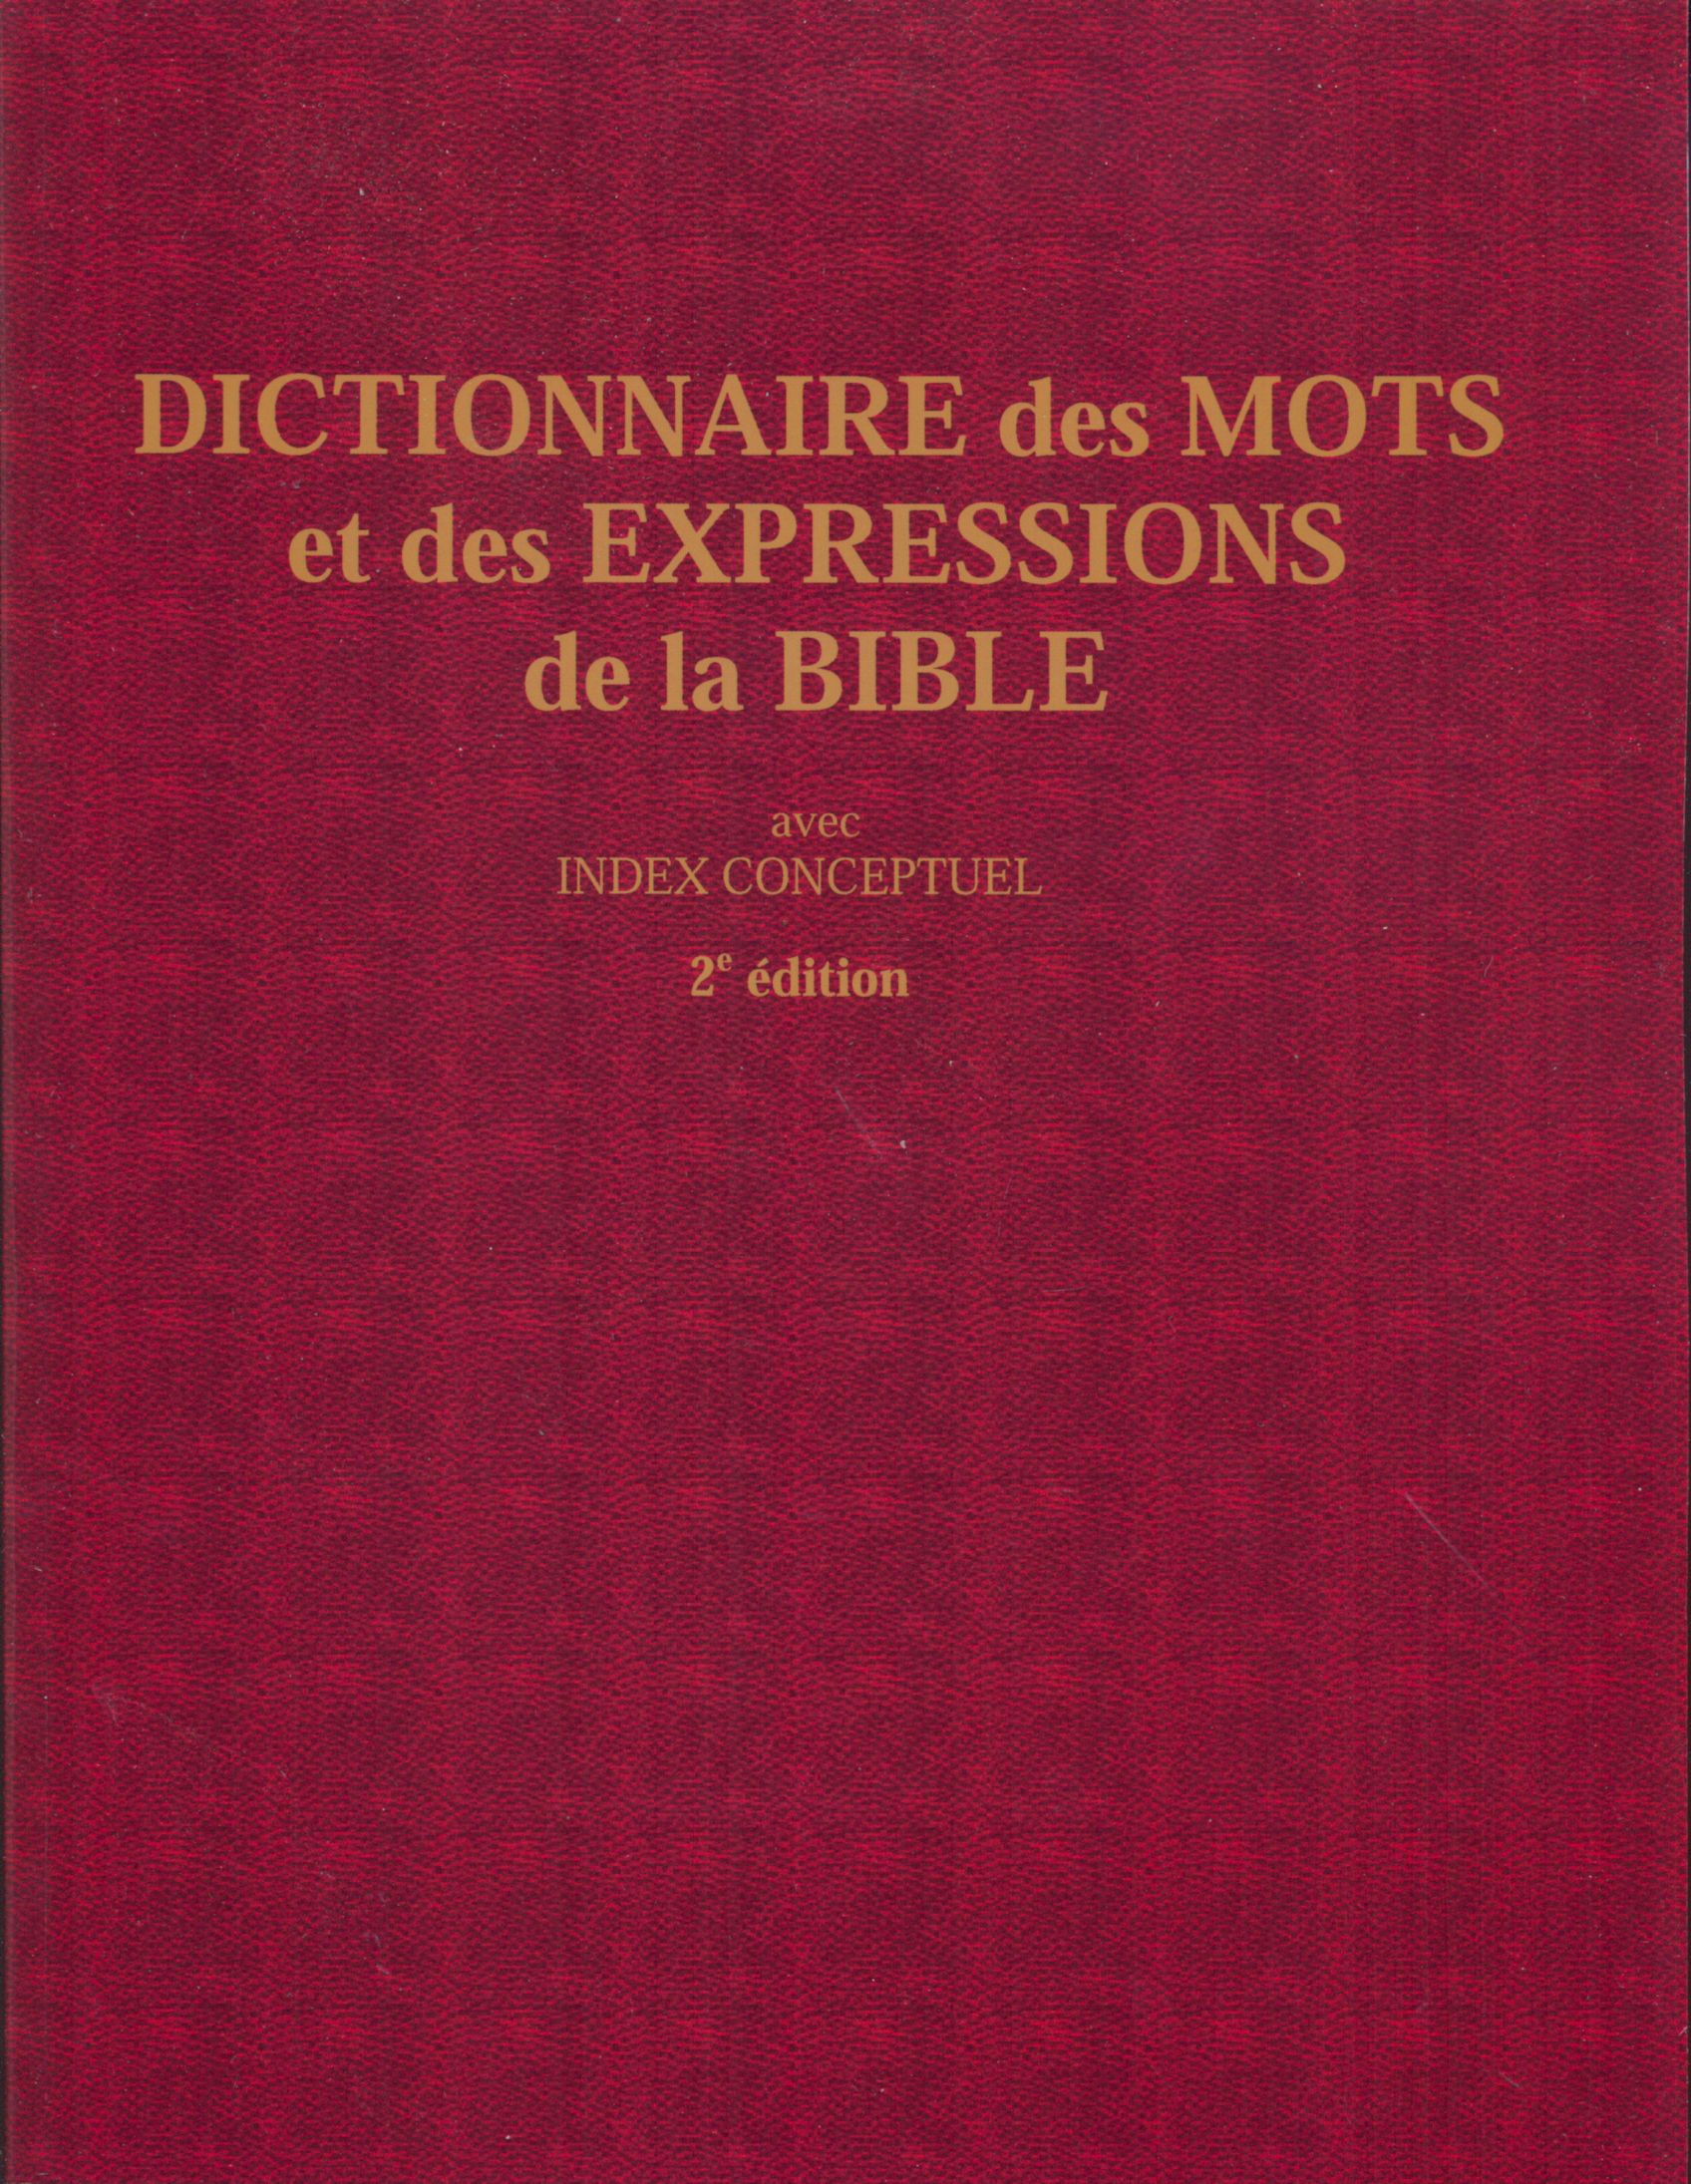 Dictionnaire des mots et des expressions de la Bible  - avec index conceptuel - 2e édition